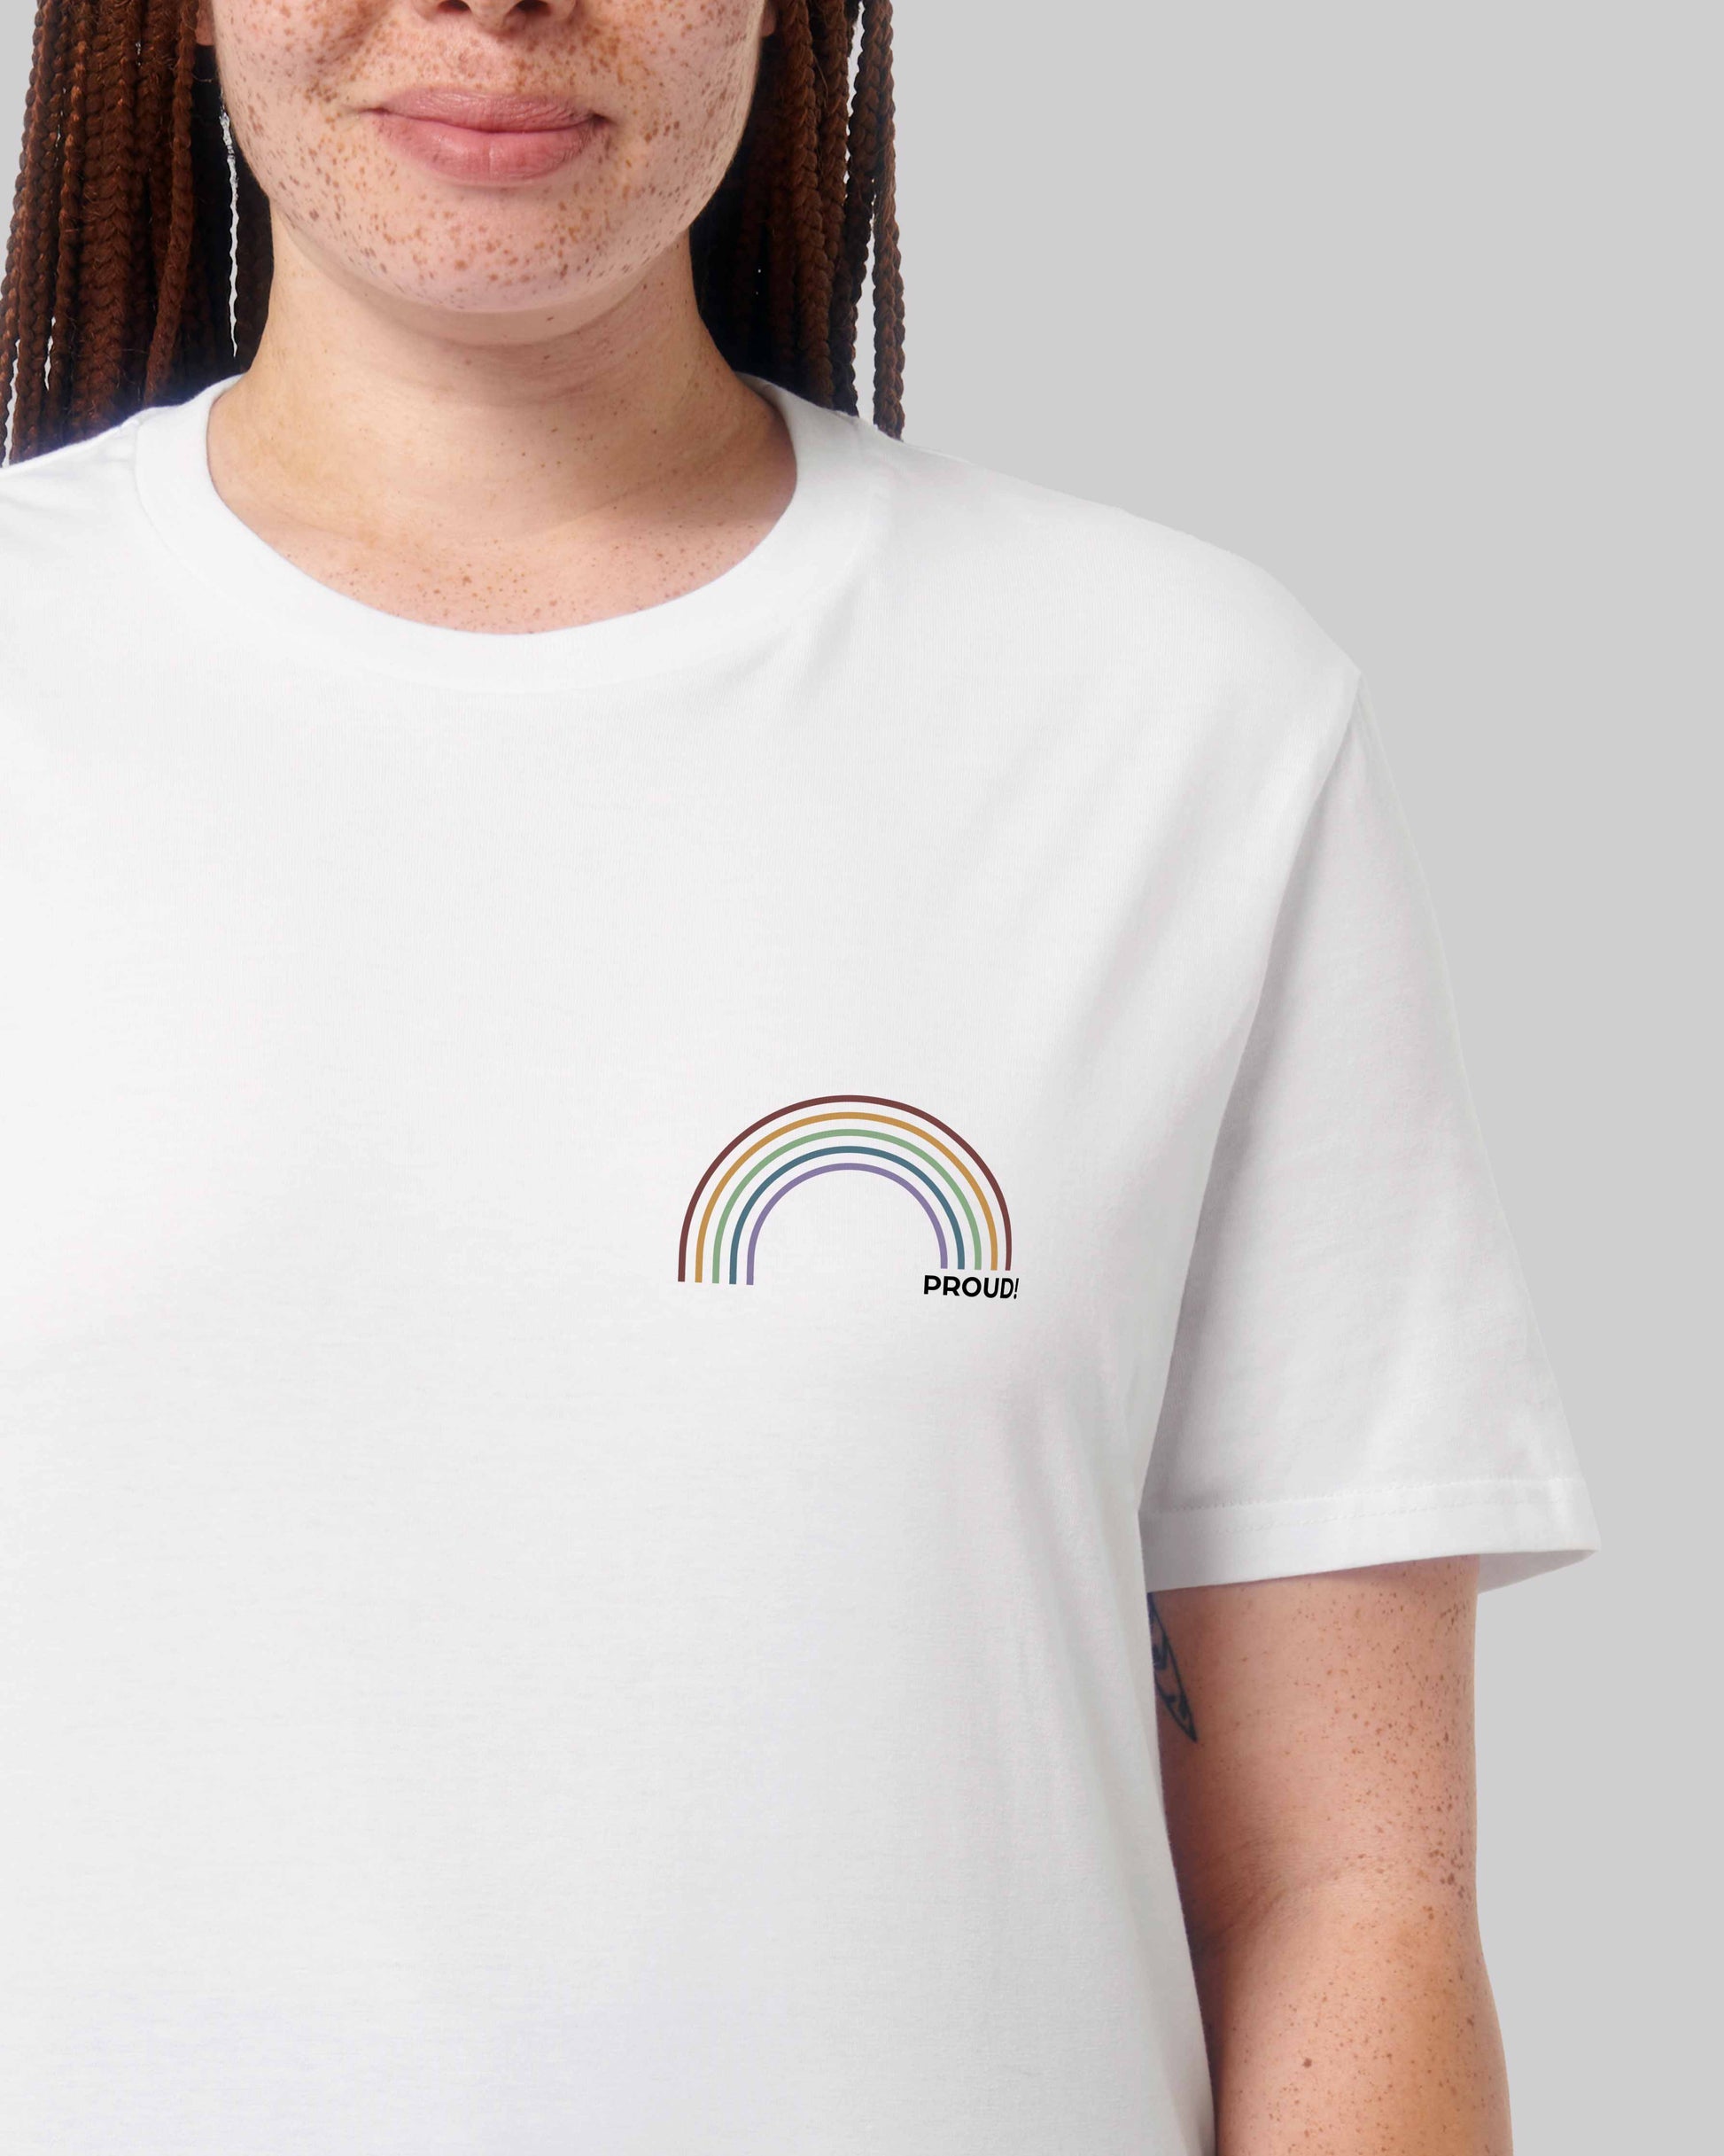 EINHORST® unisex Organic Shirt in Weiß mit dem Motiv "proud Regenbogen" in der Kombination bunter Regenbogen mit schwarzer Schrift, Bild von weiblicher Person mit Shirt